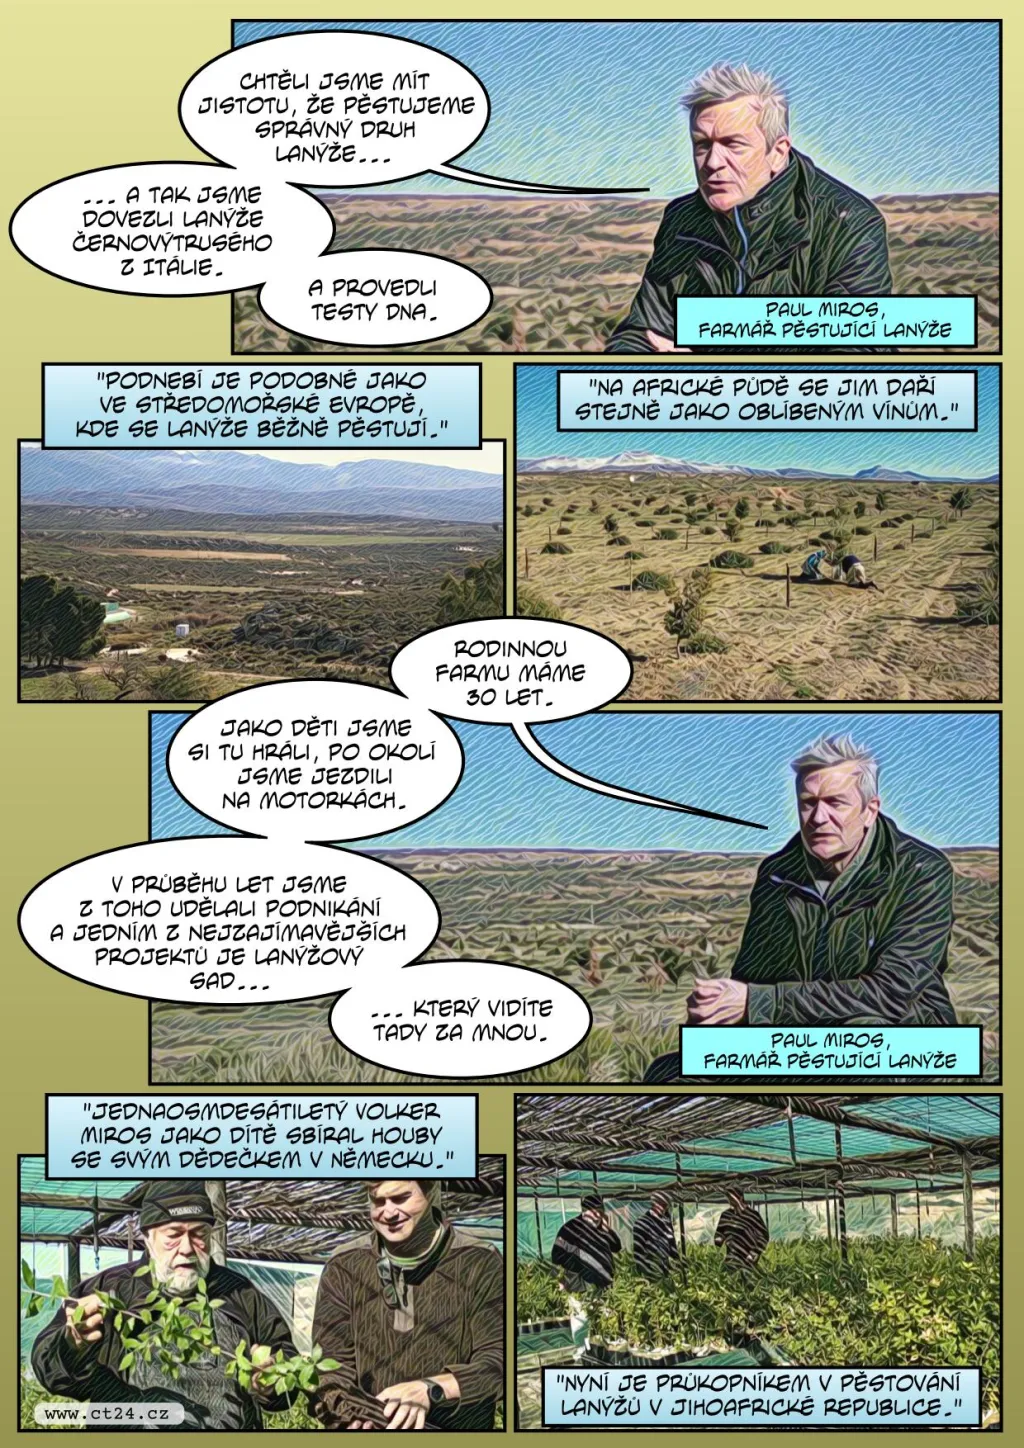 Pěstování lanýžů zkouší už i v Jihoafrické republice. Prodávají se za desítky milionů korun